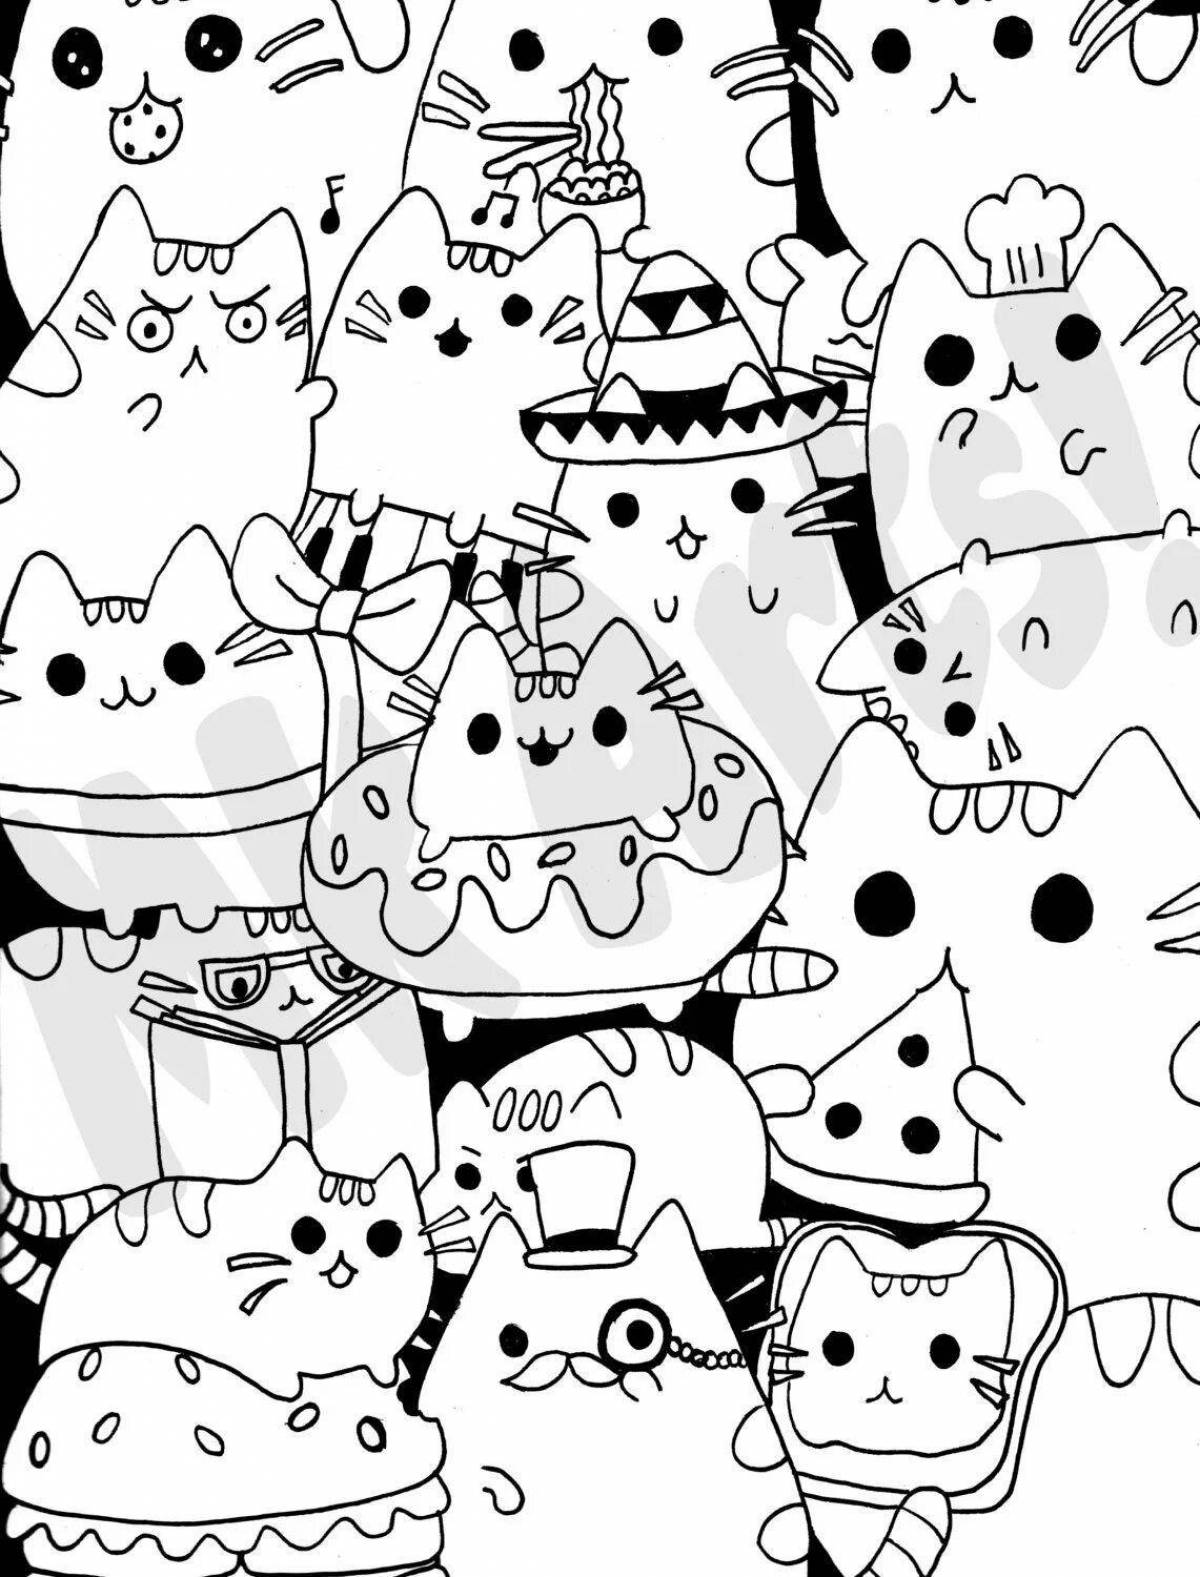 Kawaii cat playful coloring page